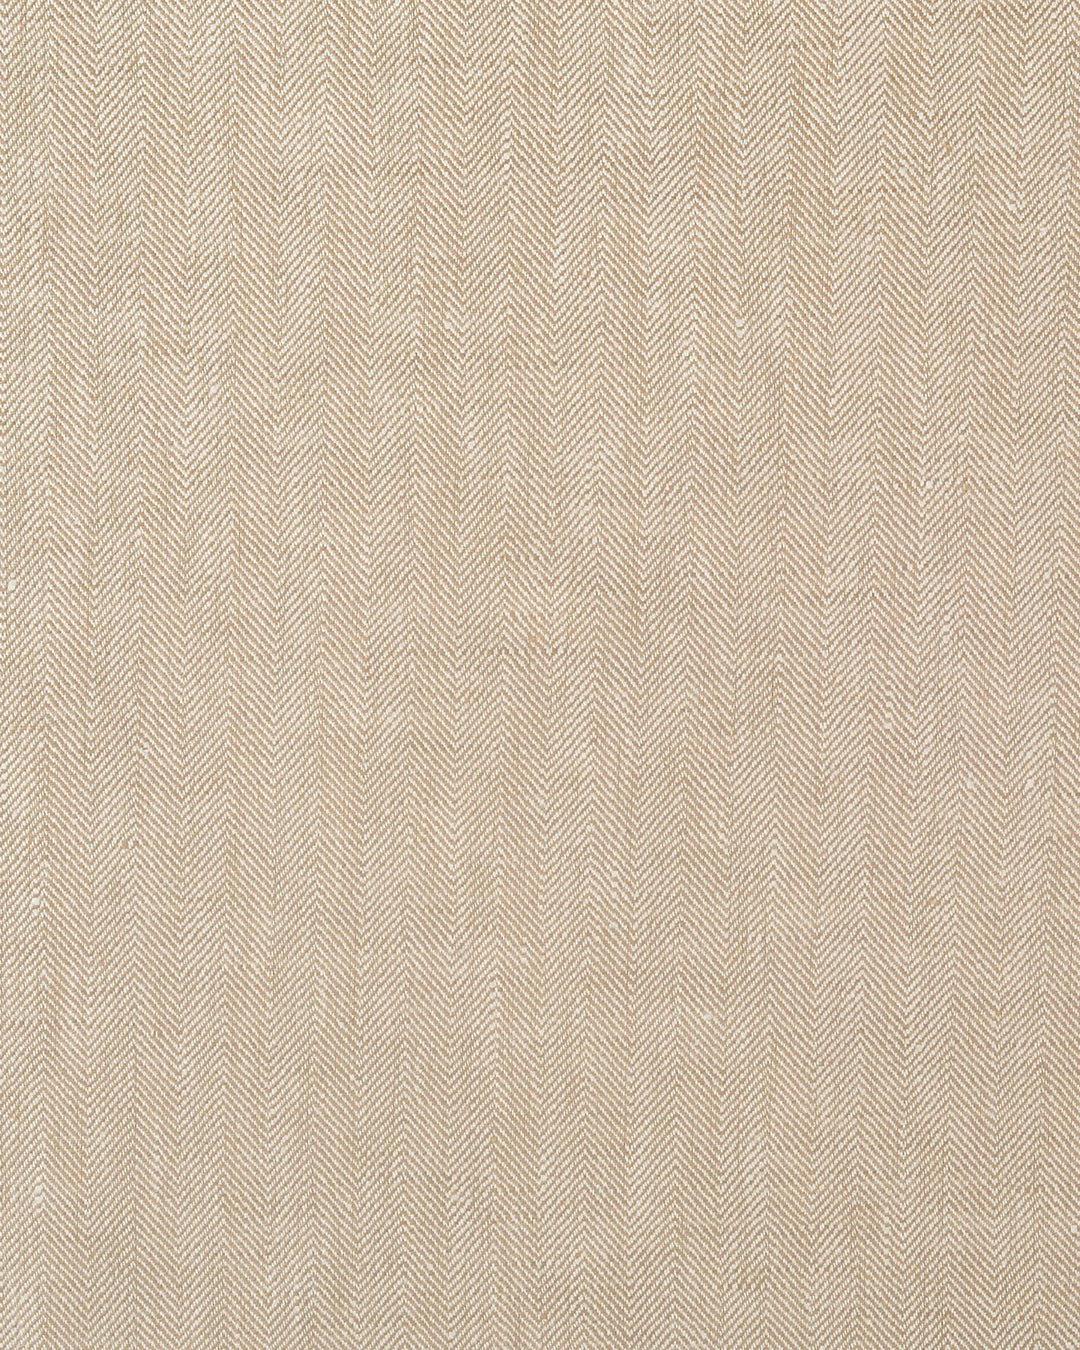 Linen: Golden Tan  Herringbone